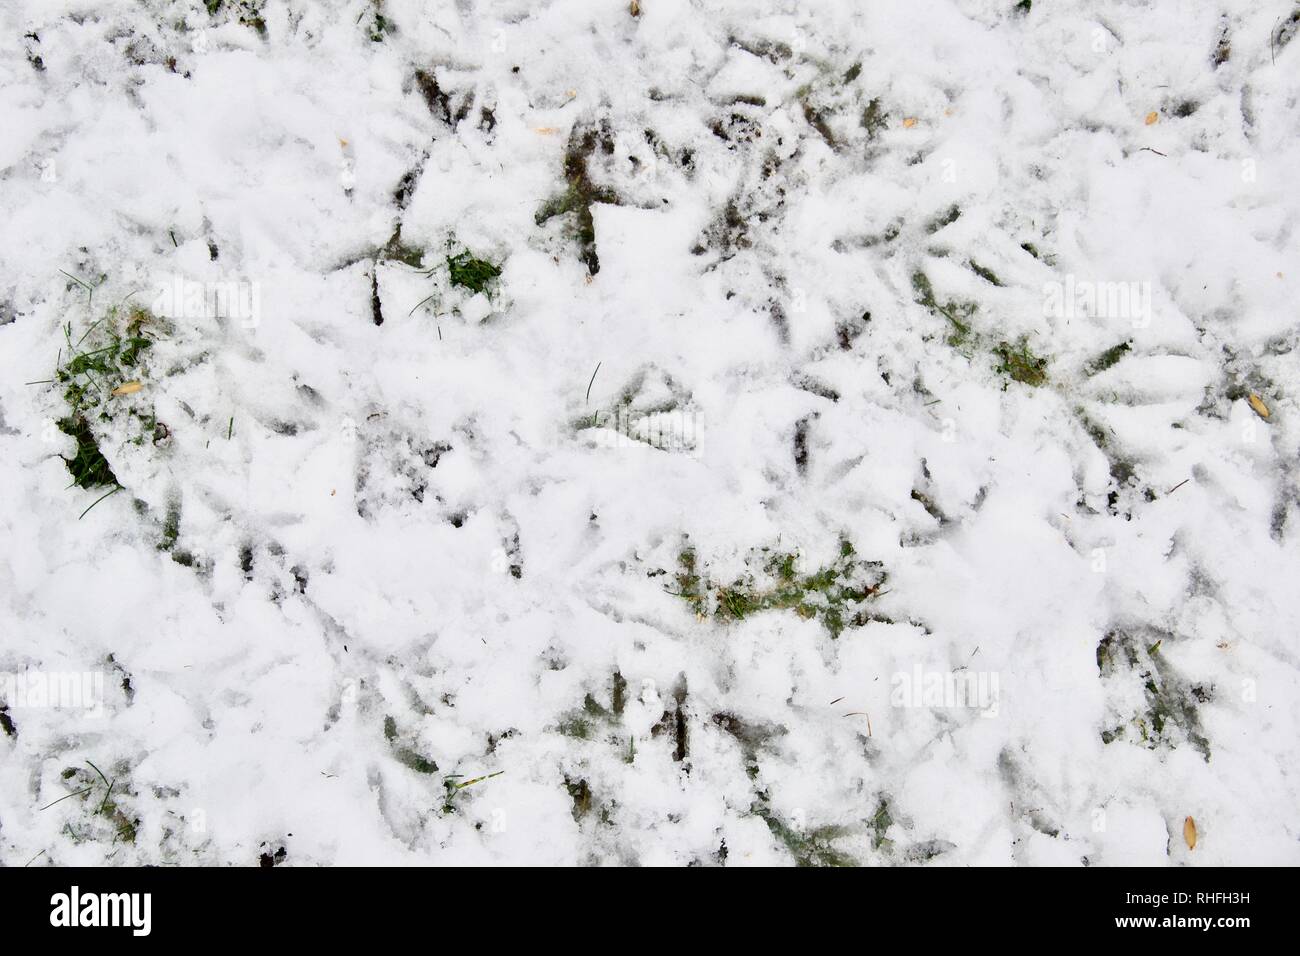 Von oben nach unten geschossen von verschiedenen Vogelarten Ausdrucke in einer Unordnung auf uneinheitliche Schnee auf grünem Rasen Stockfoto